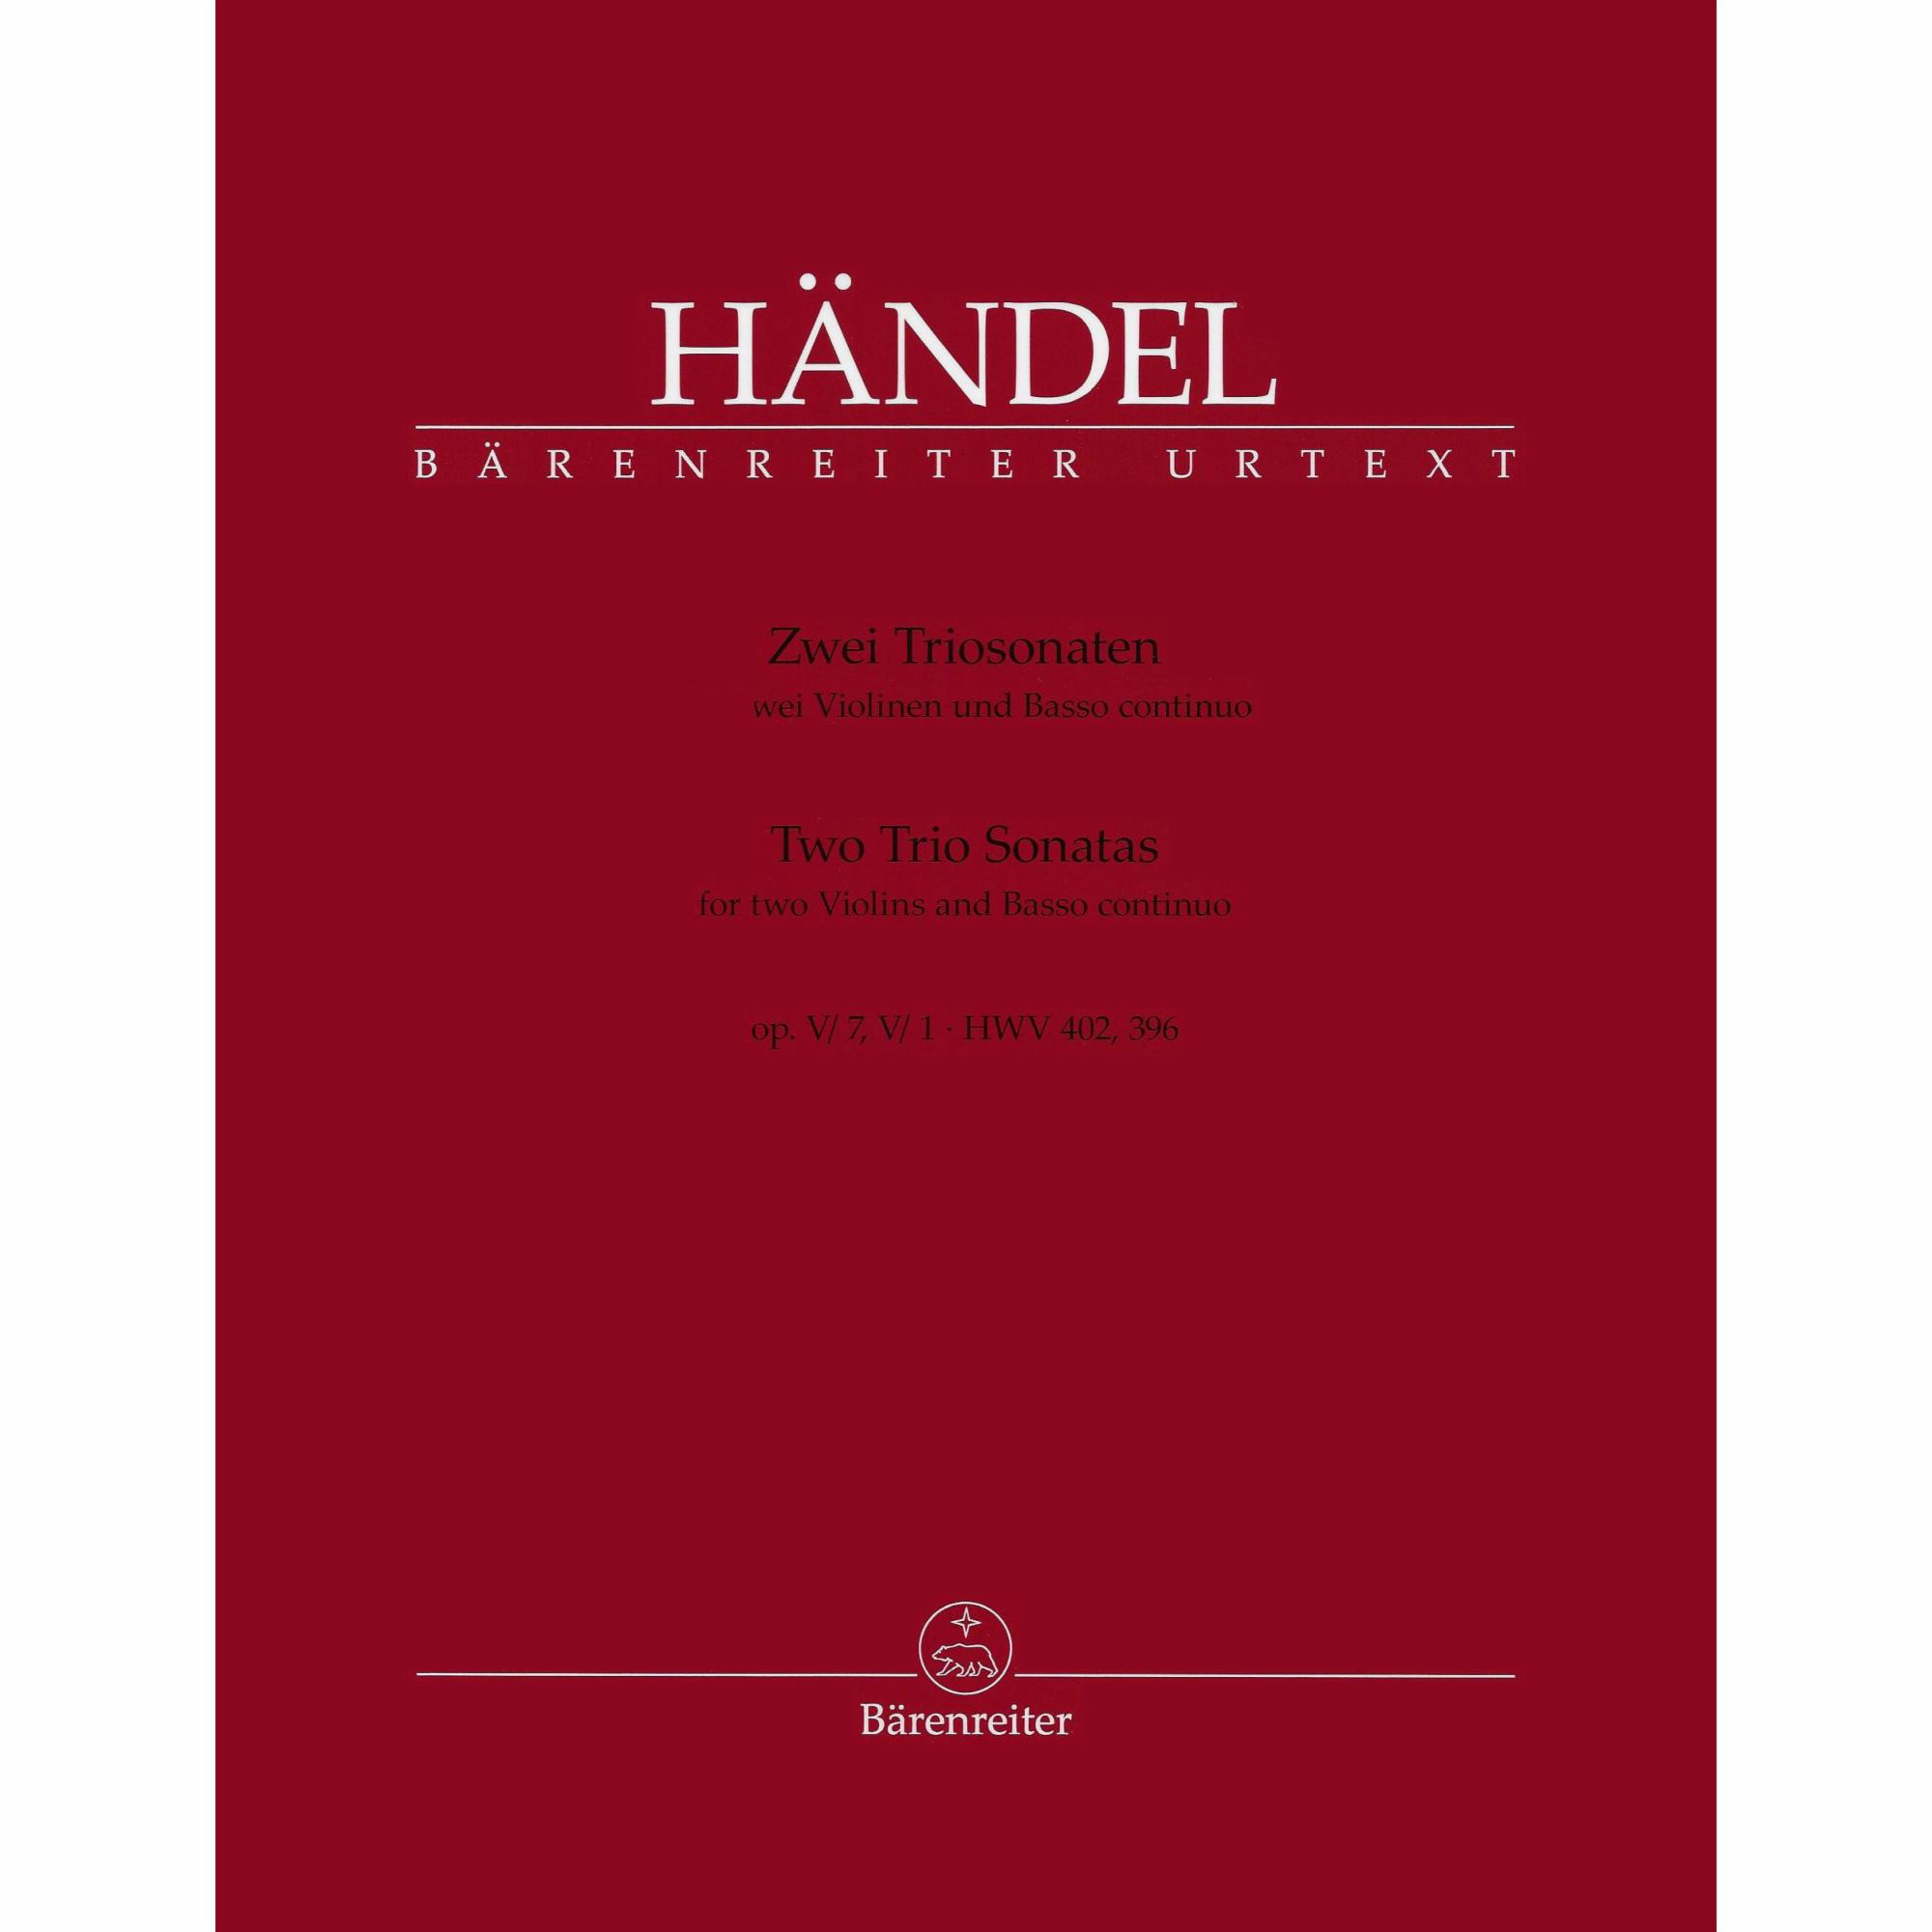 Handel -- Two Trio Sonatas, Op. V, Nos. 7 & 1 for